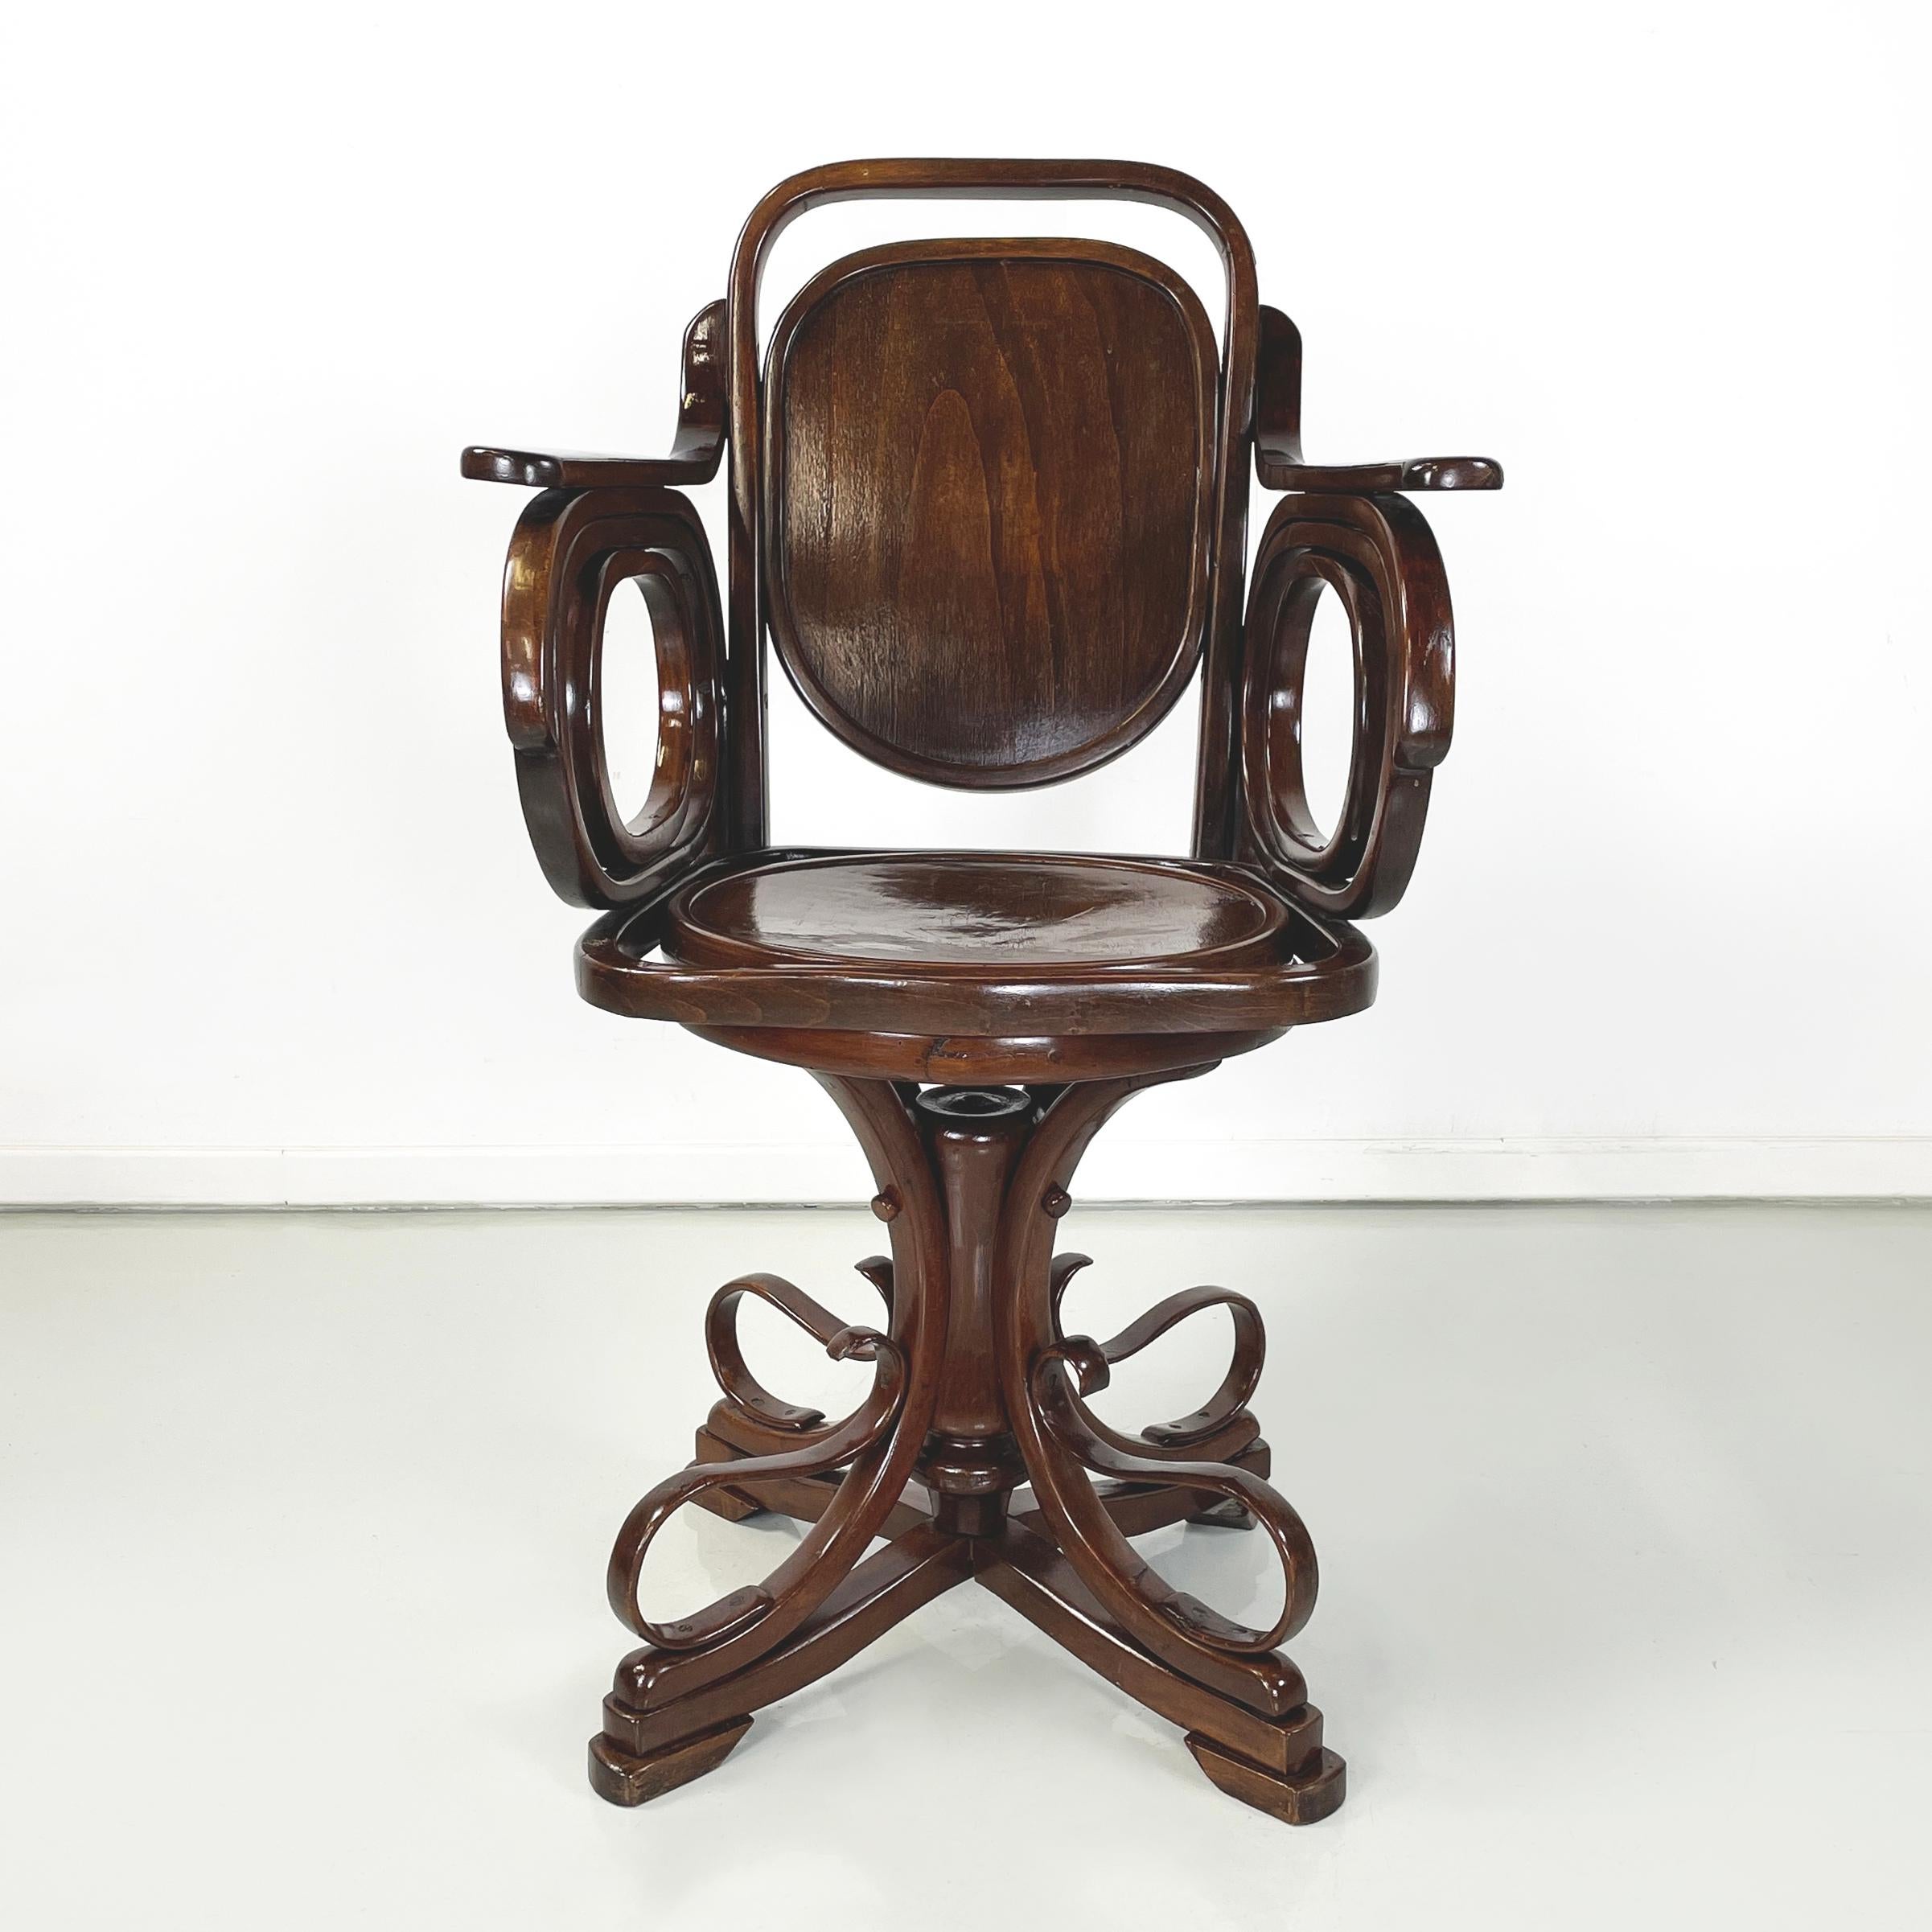 Österreichischer Jugendstil-Drehstuhl mit Armlehnen aus Massivholz von Thonet, frühe 1900er Jahre
Drehstuhl ganz aus Massivholz. Die Rückenlehne und der Sitz haben eine runde Form. Auf der Rückseite der Rückenlehne und auf der Sitzfläche befinden